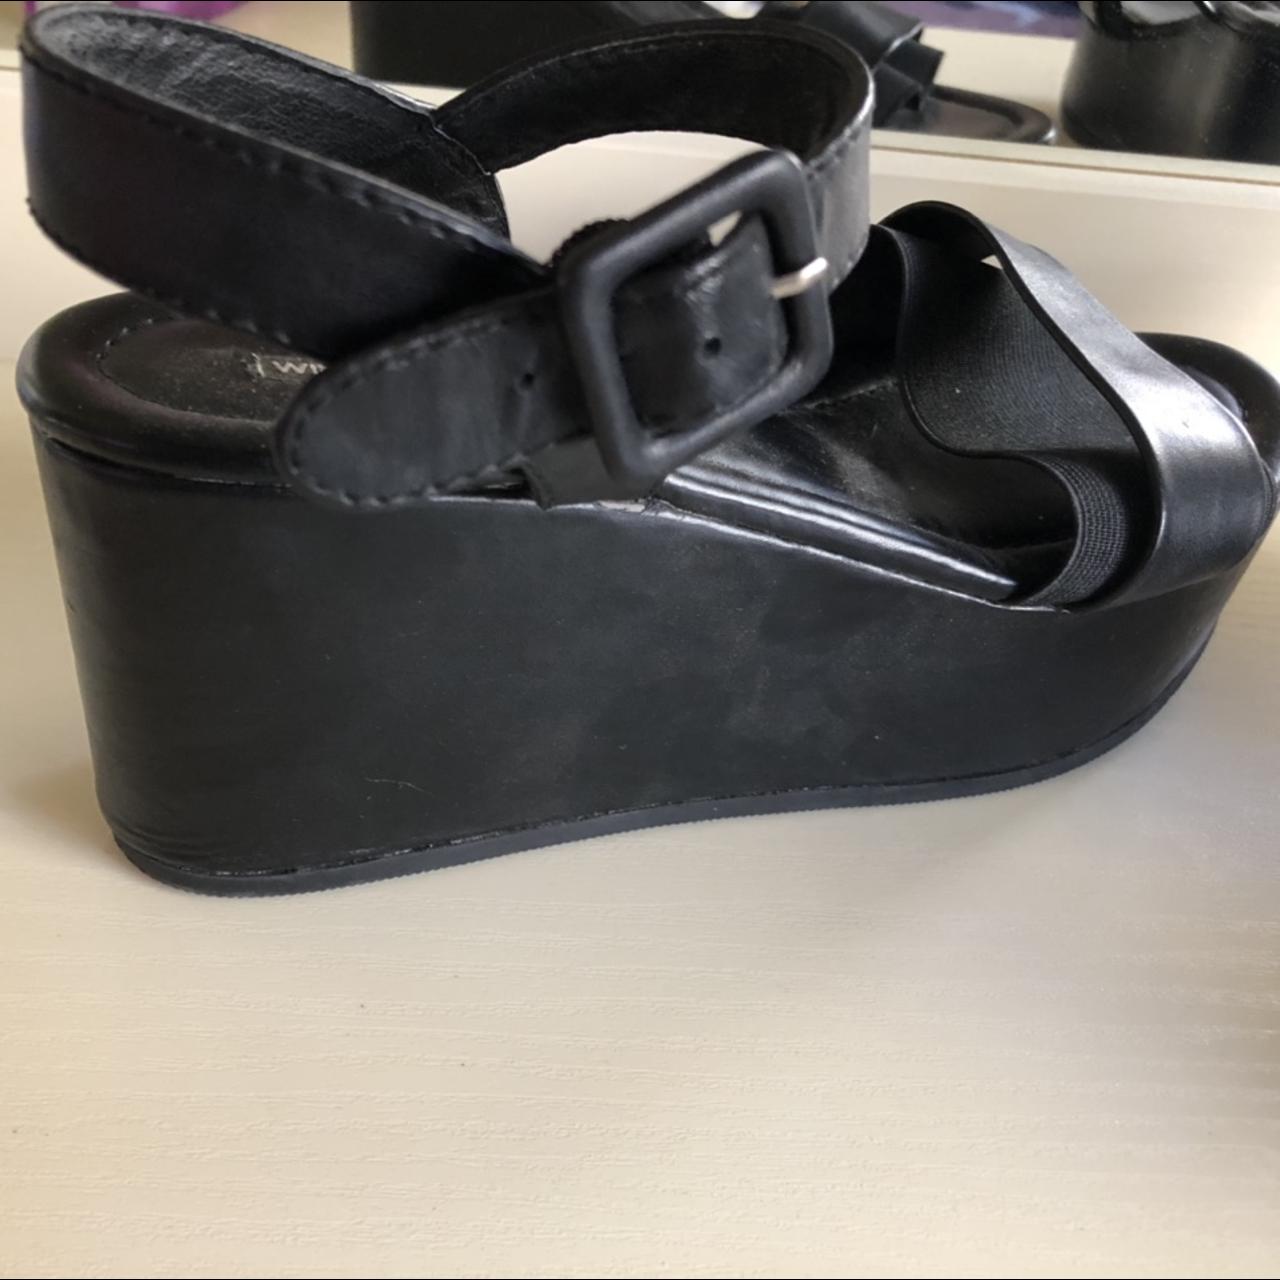 Windsorsmith high heel platform shoes; size US 8... - Depop